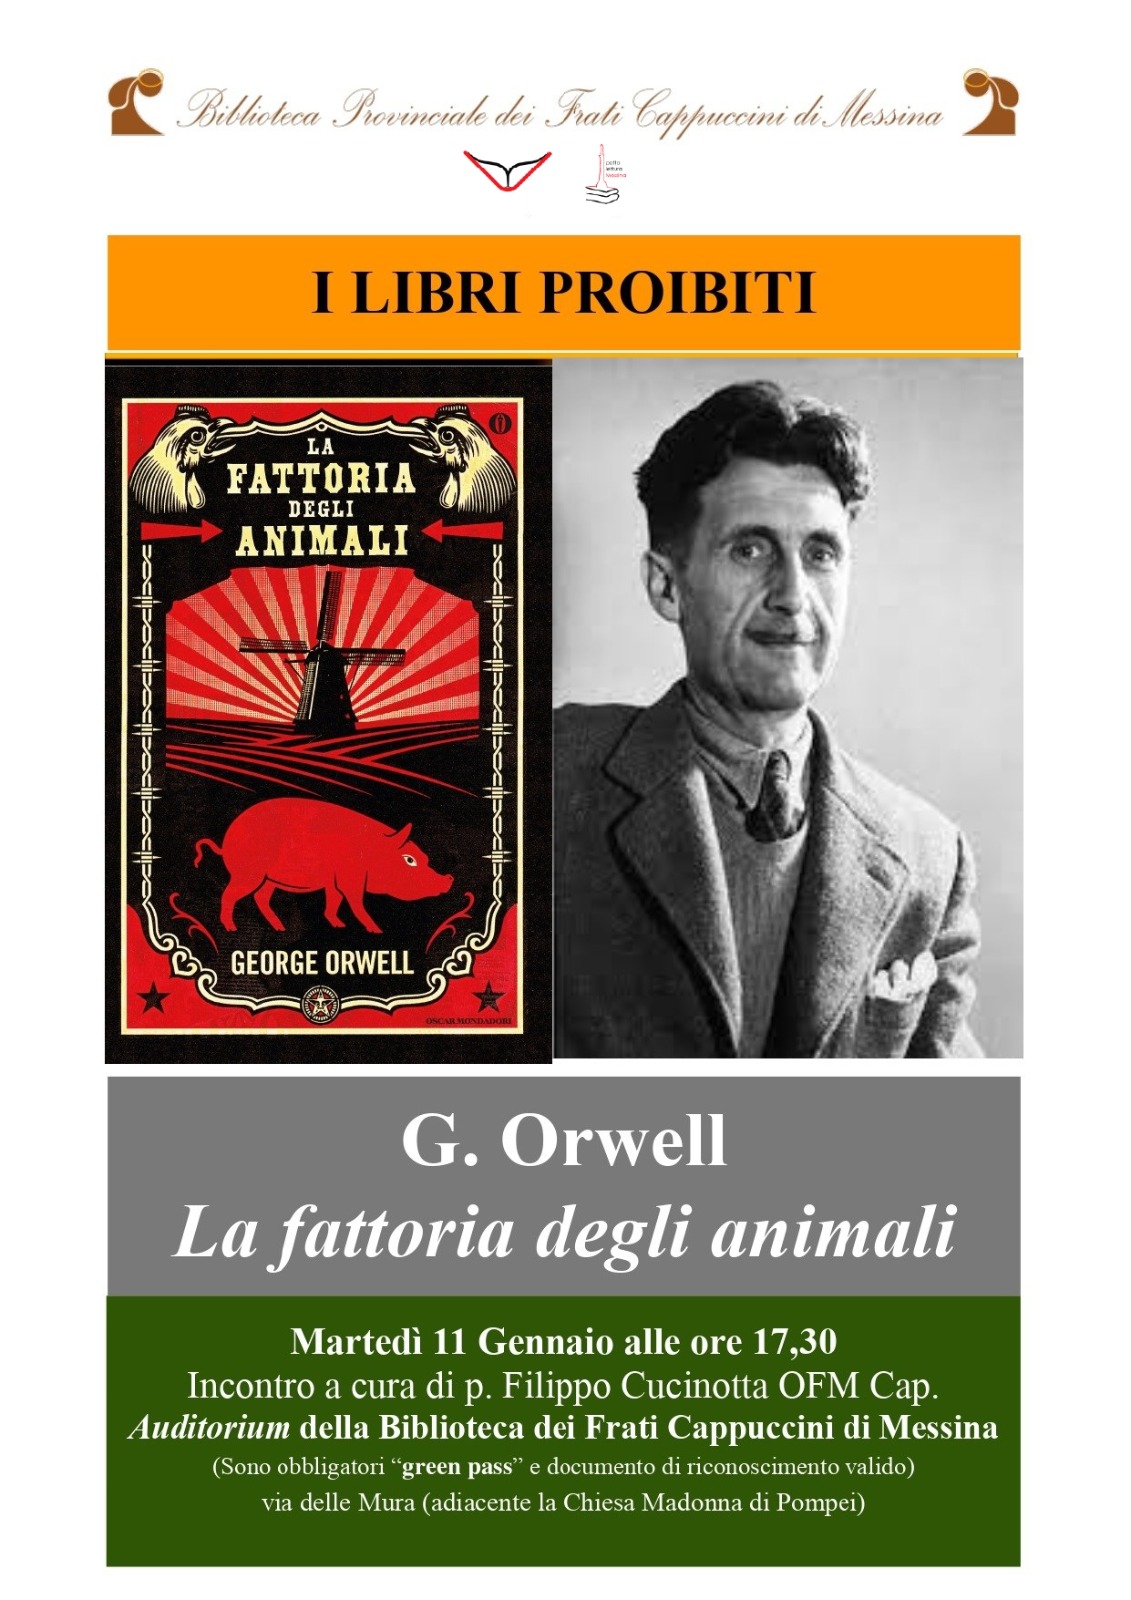 Quarto incontro Georg Orwell La fattoria degli animali